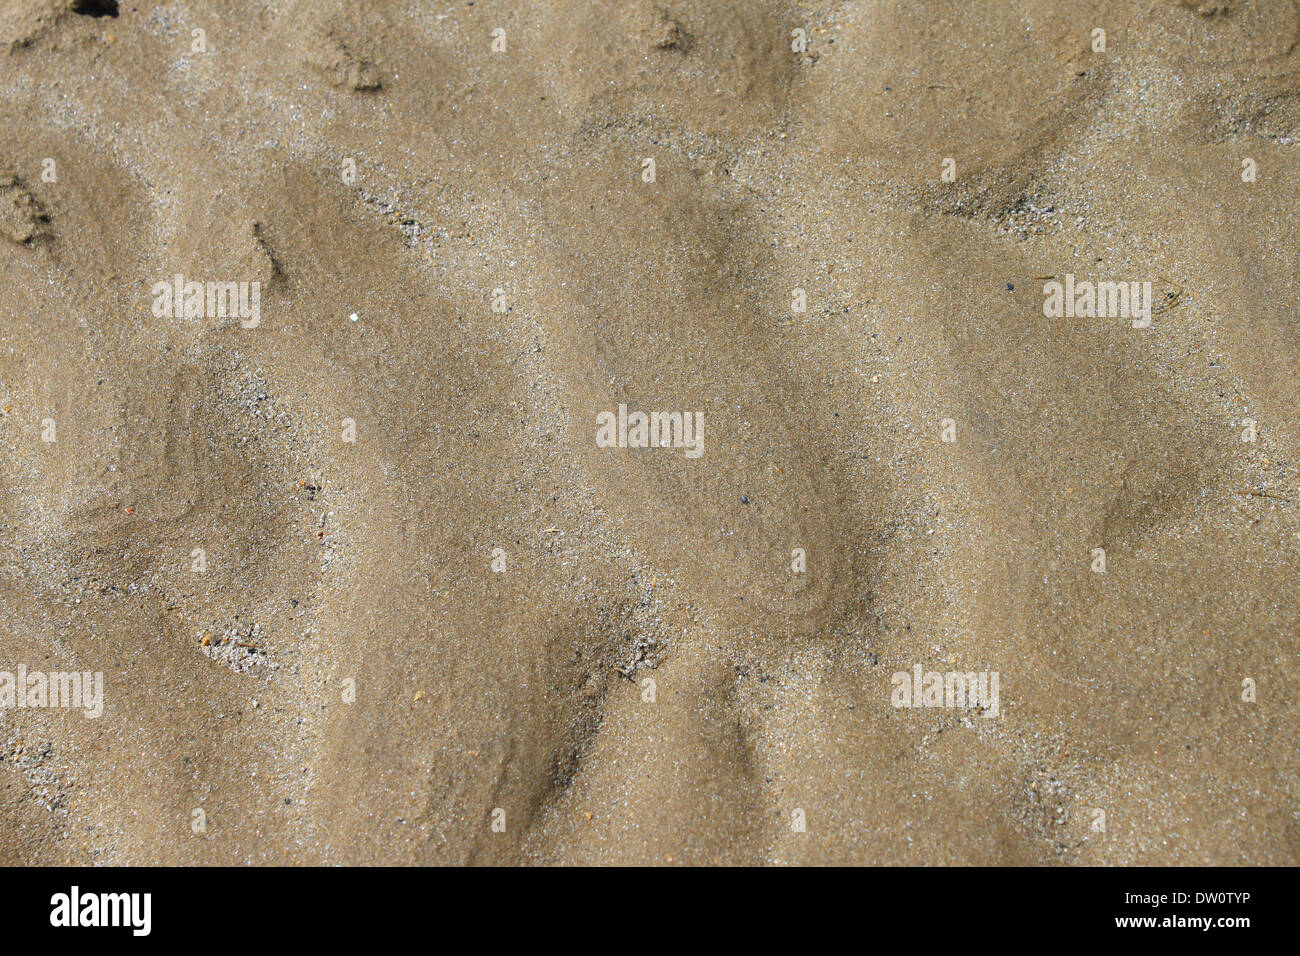 Le sable après la vague Banque D'Images